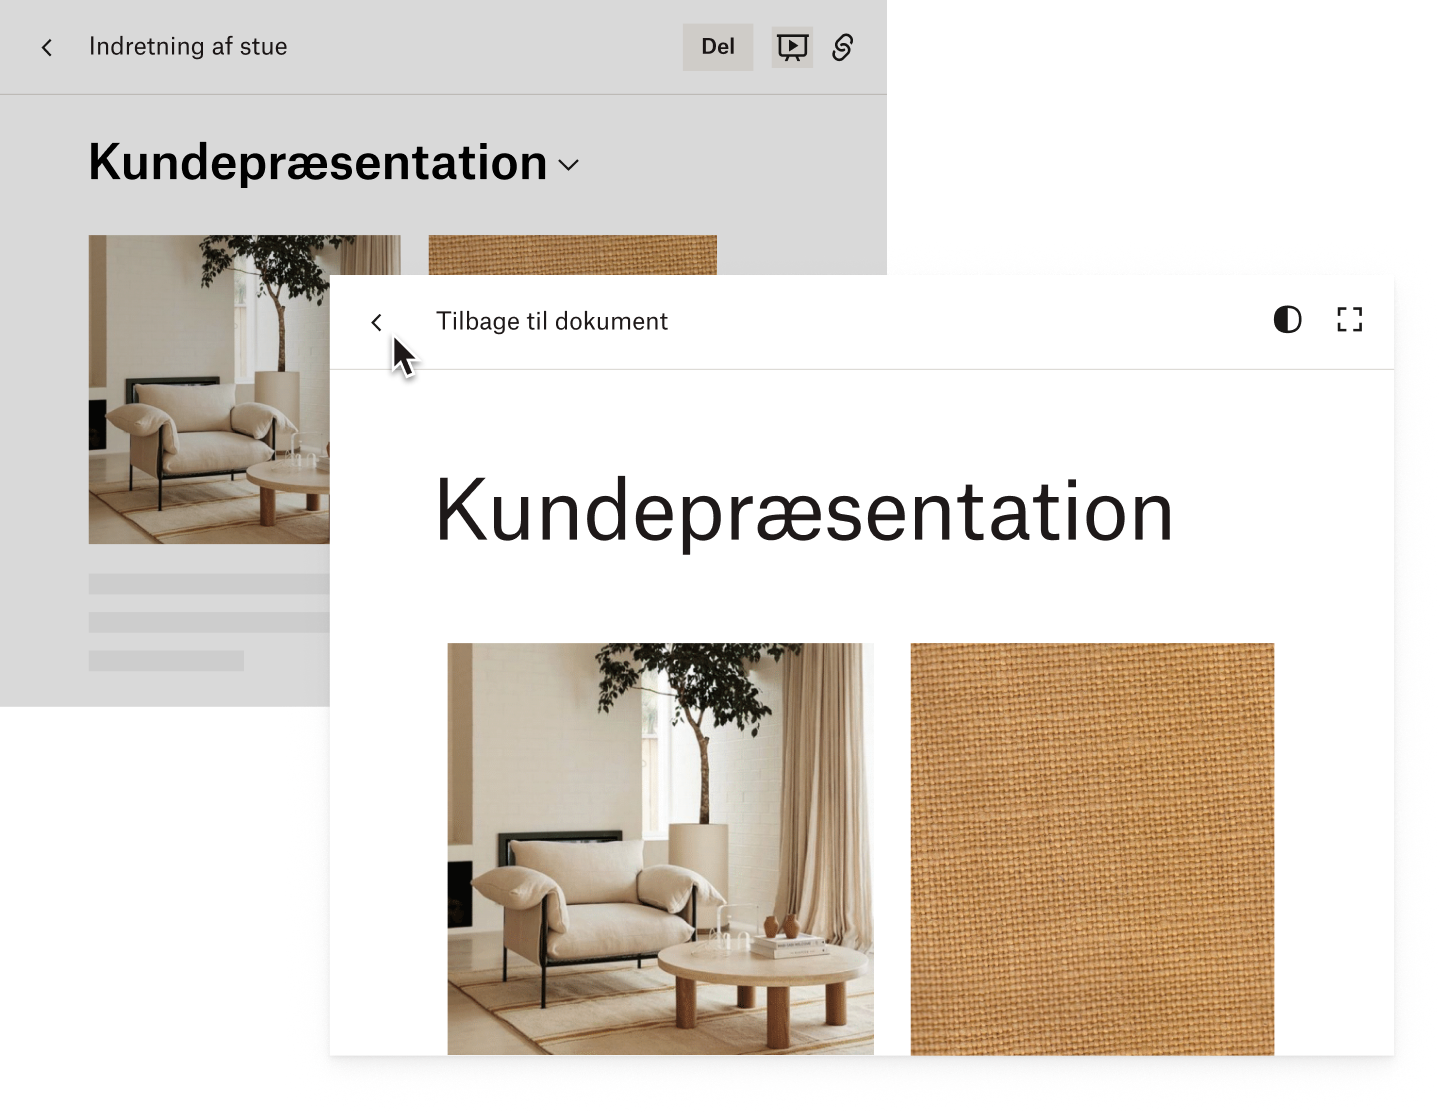 En bruger, der fremfører sin præsentation af en ny indretning af en stue i Dropbox Paper